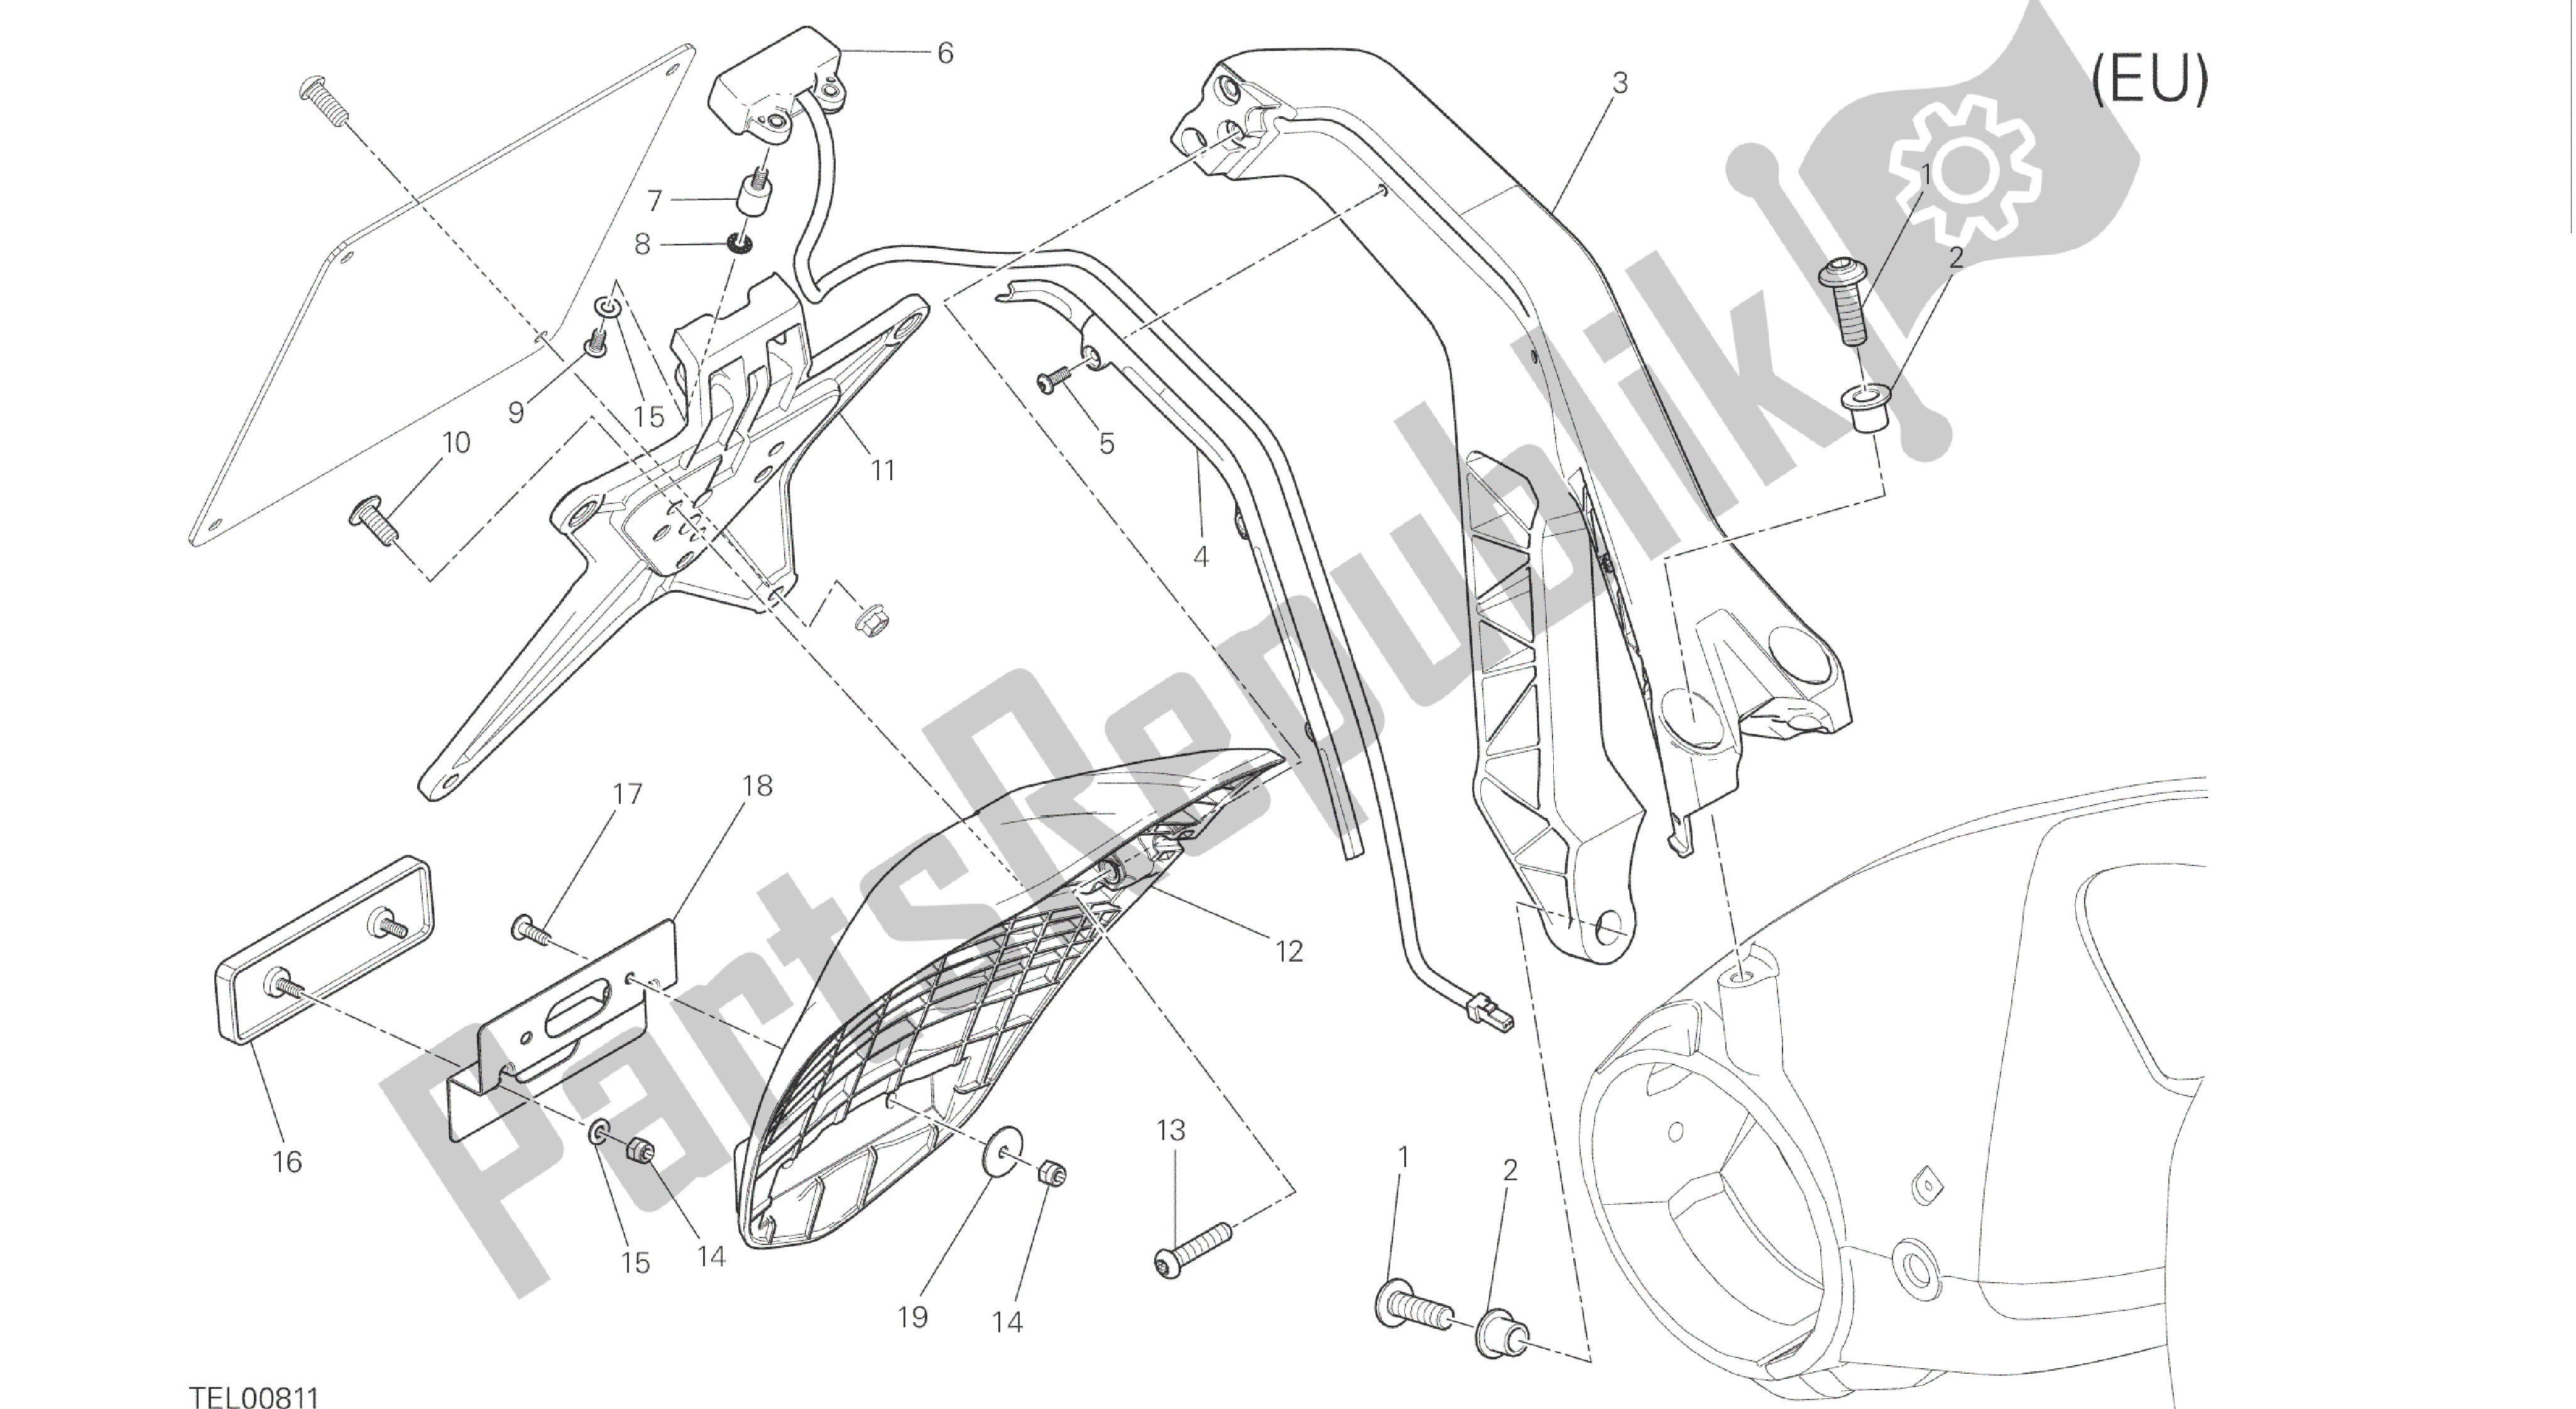 Alle onderdelen voor de Tekening 28b - Plaathouder [mod: M 1200; Xst: Eur, Fra, Jap, Twn] Groep Elektrisch van de Ducati Monster 1200 2016